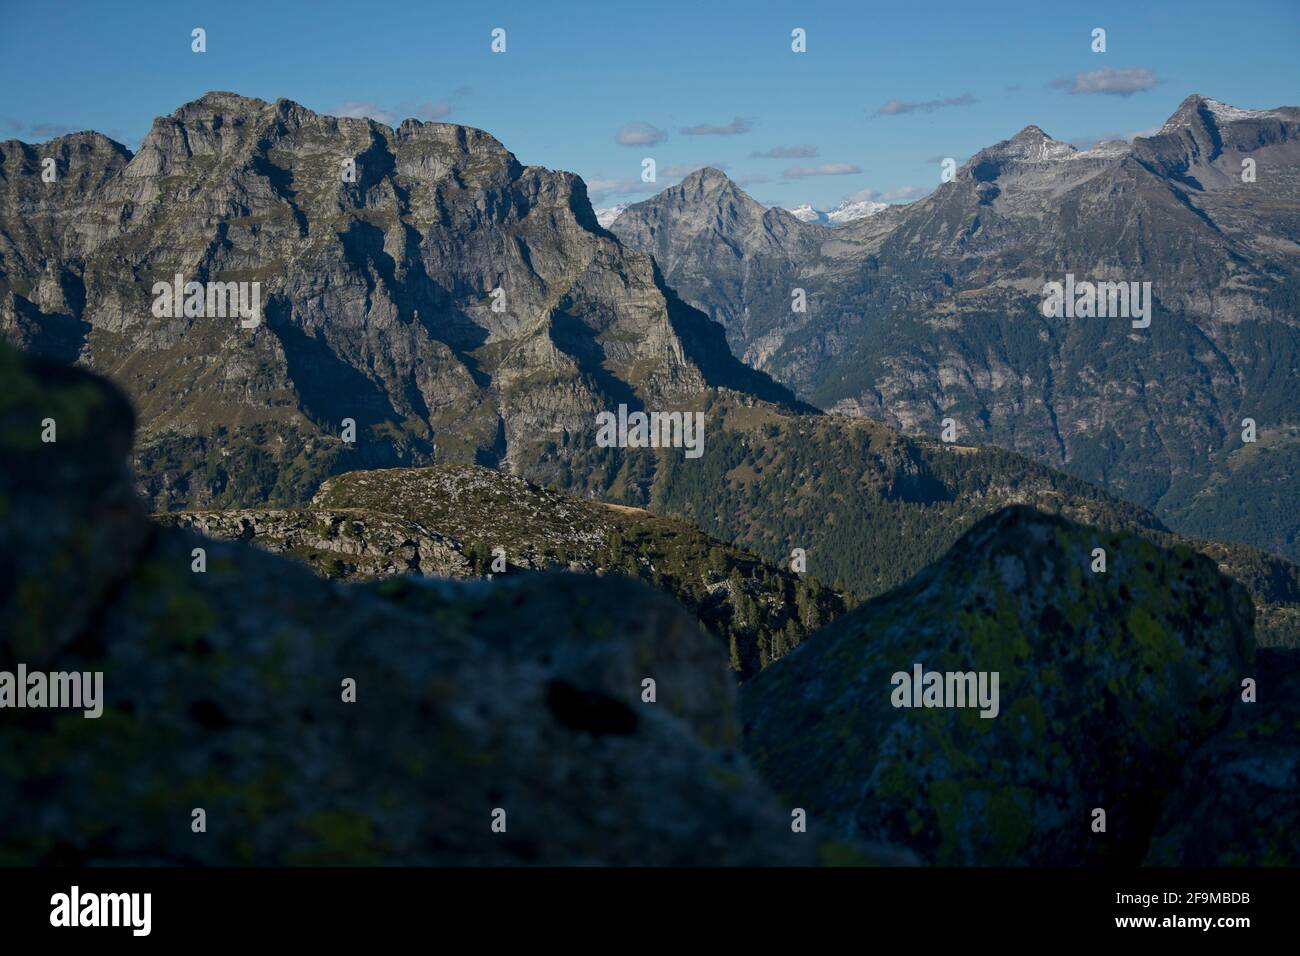 Blick in das tief eingeschnittene Val Osola, ein Seitental des Verzascatals im Tessin, Schweiz Foto de stock